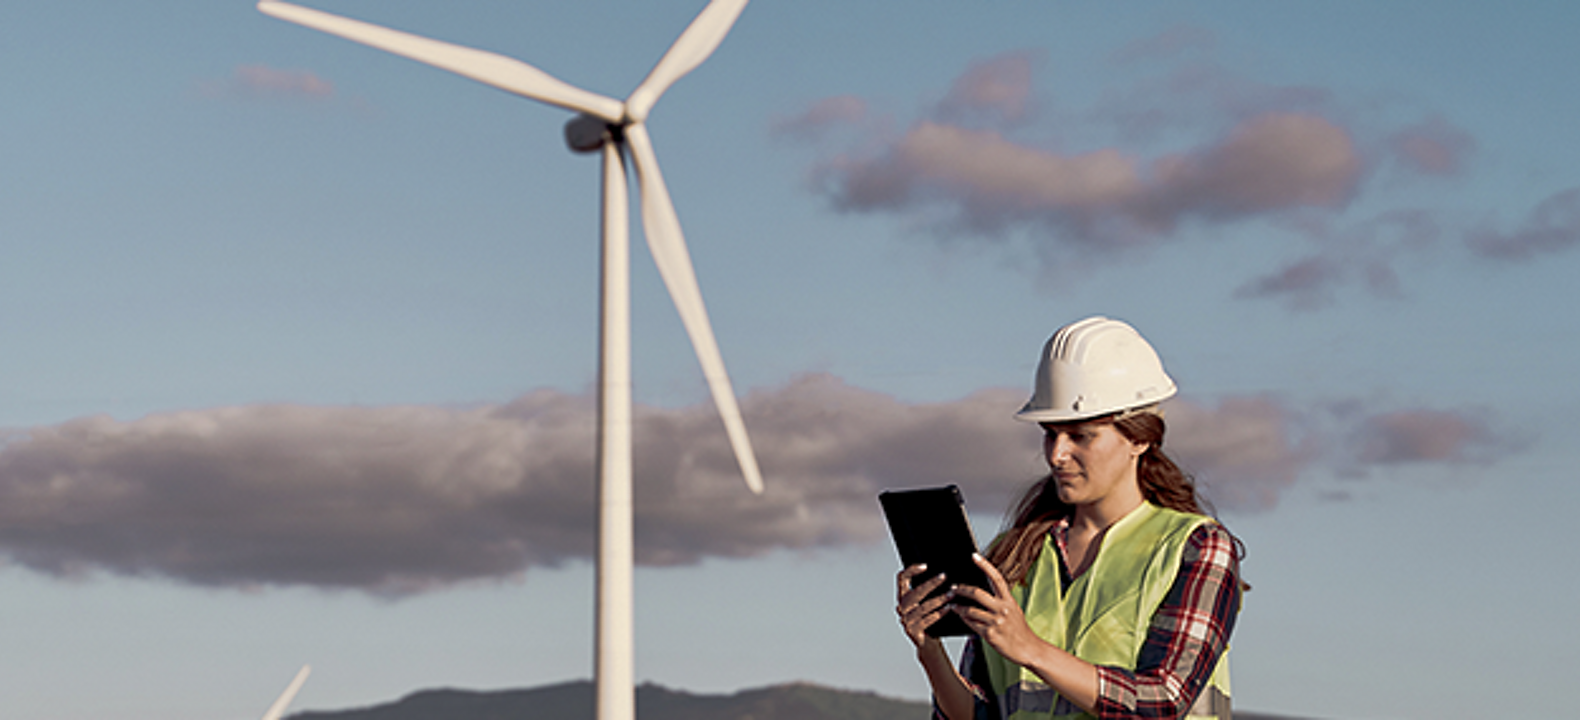 Field worker on wind power farm checks a tablet